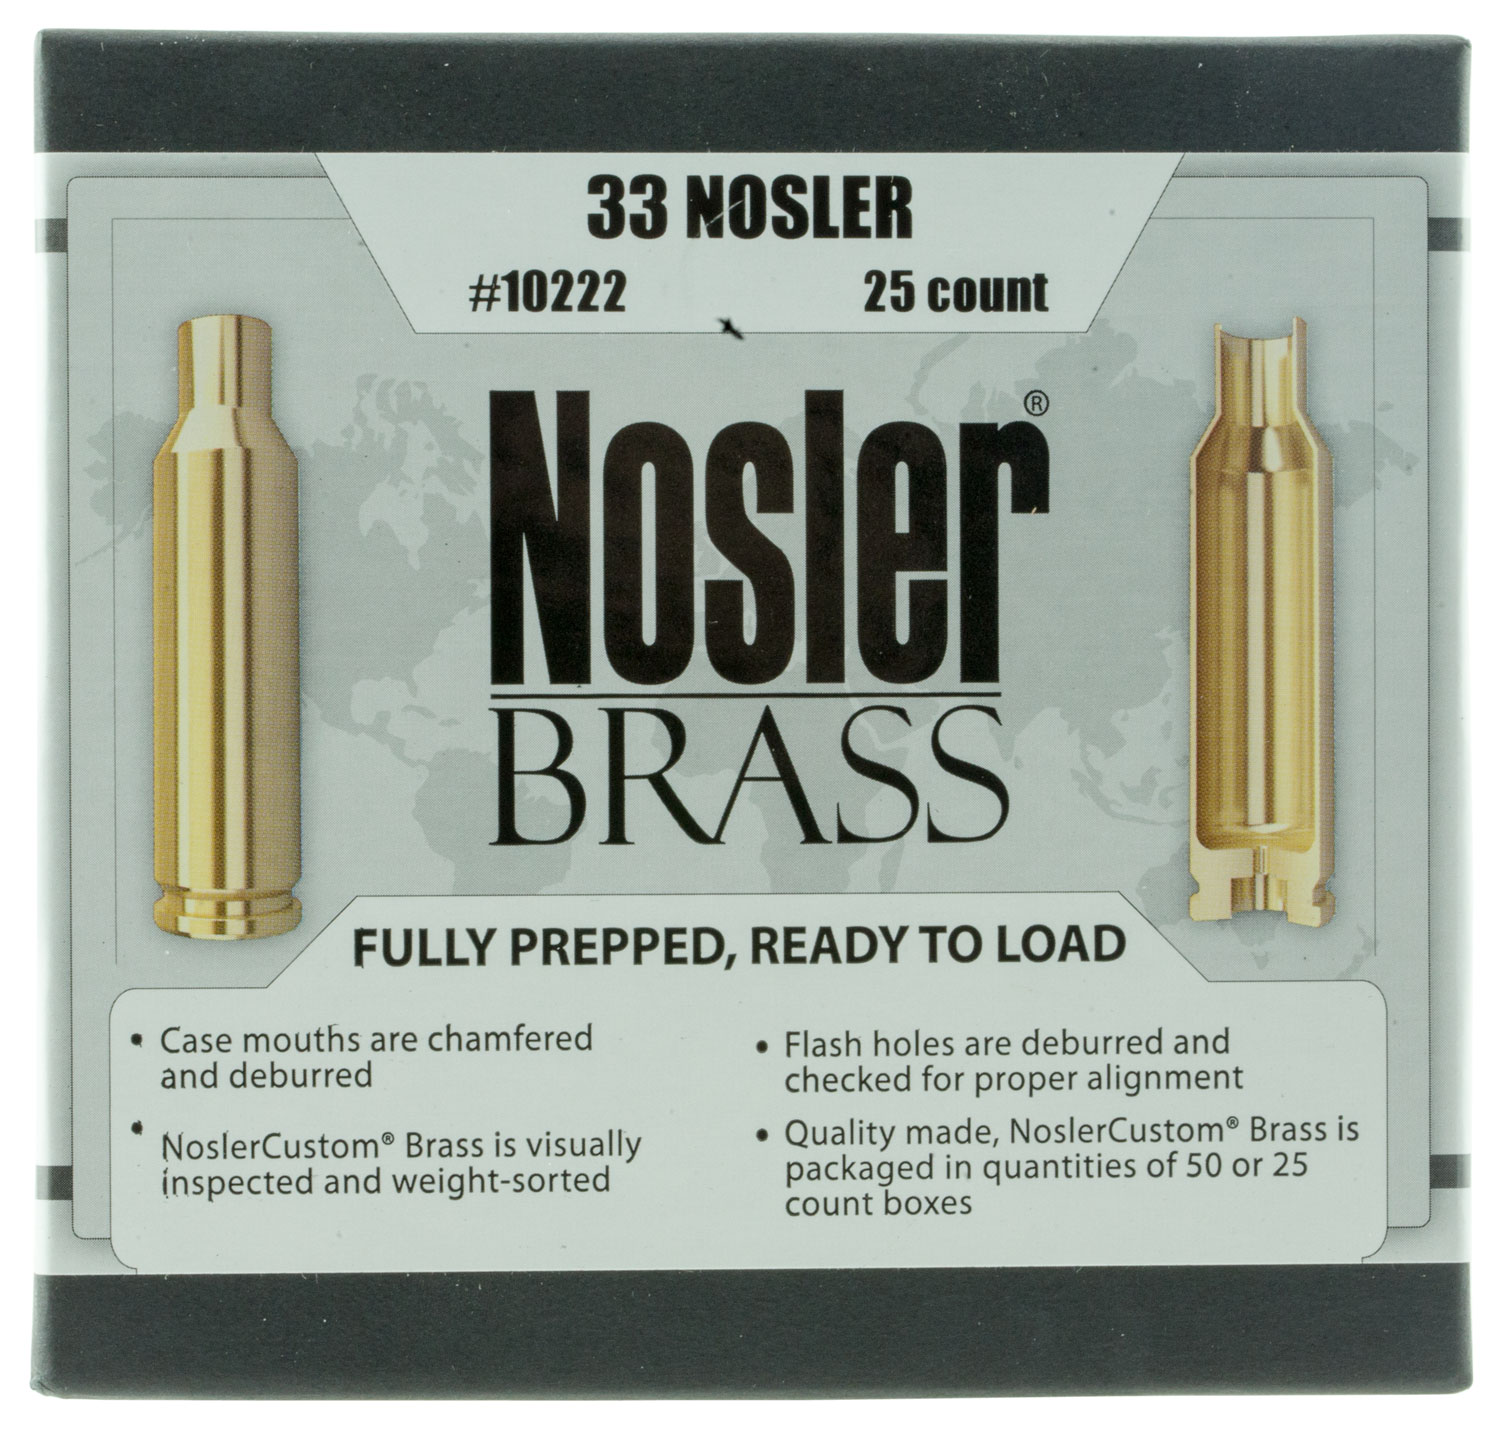 Nosler 10222 Premium Brass Unprimed Cases 33 Nosler Pistol Brass 25 Per Box